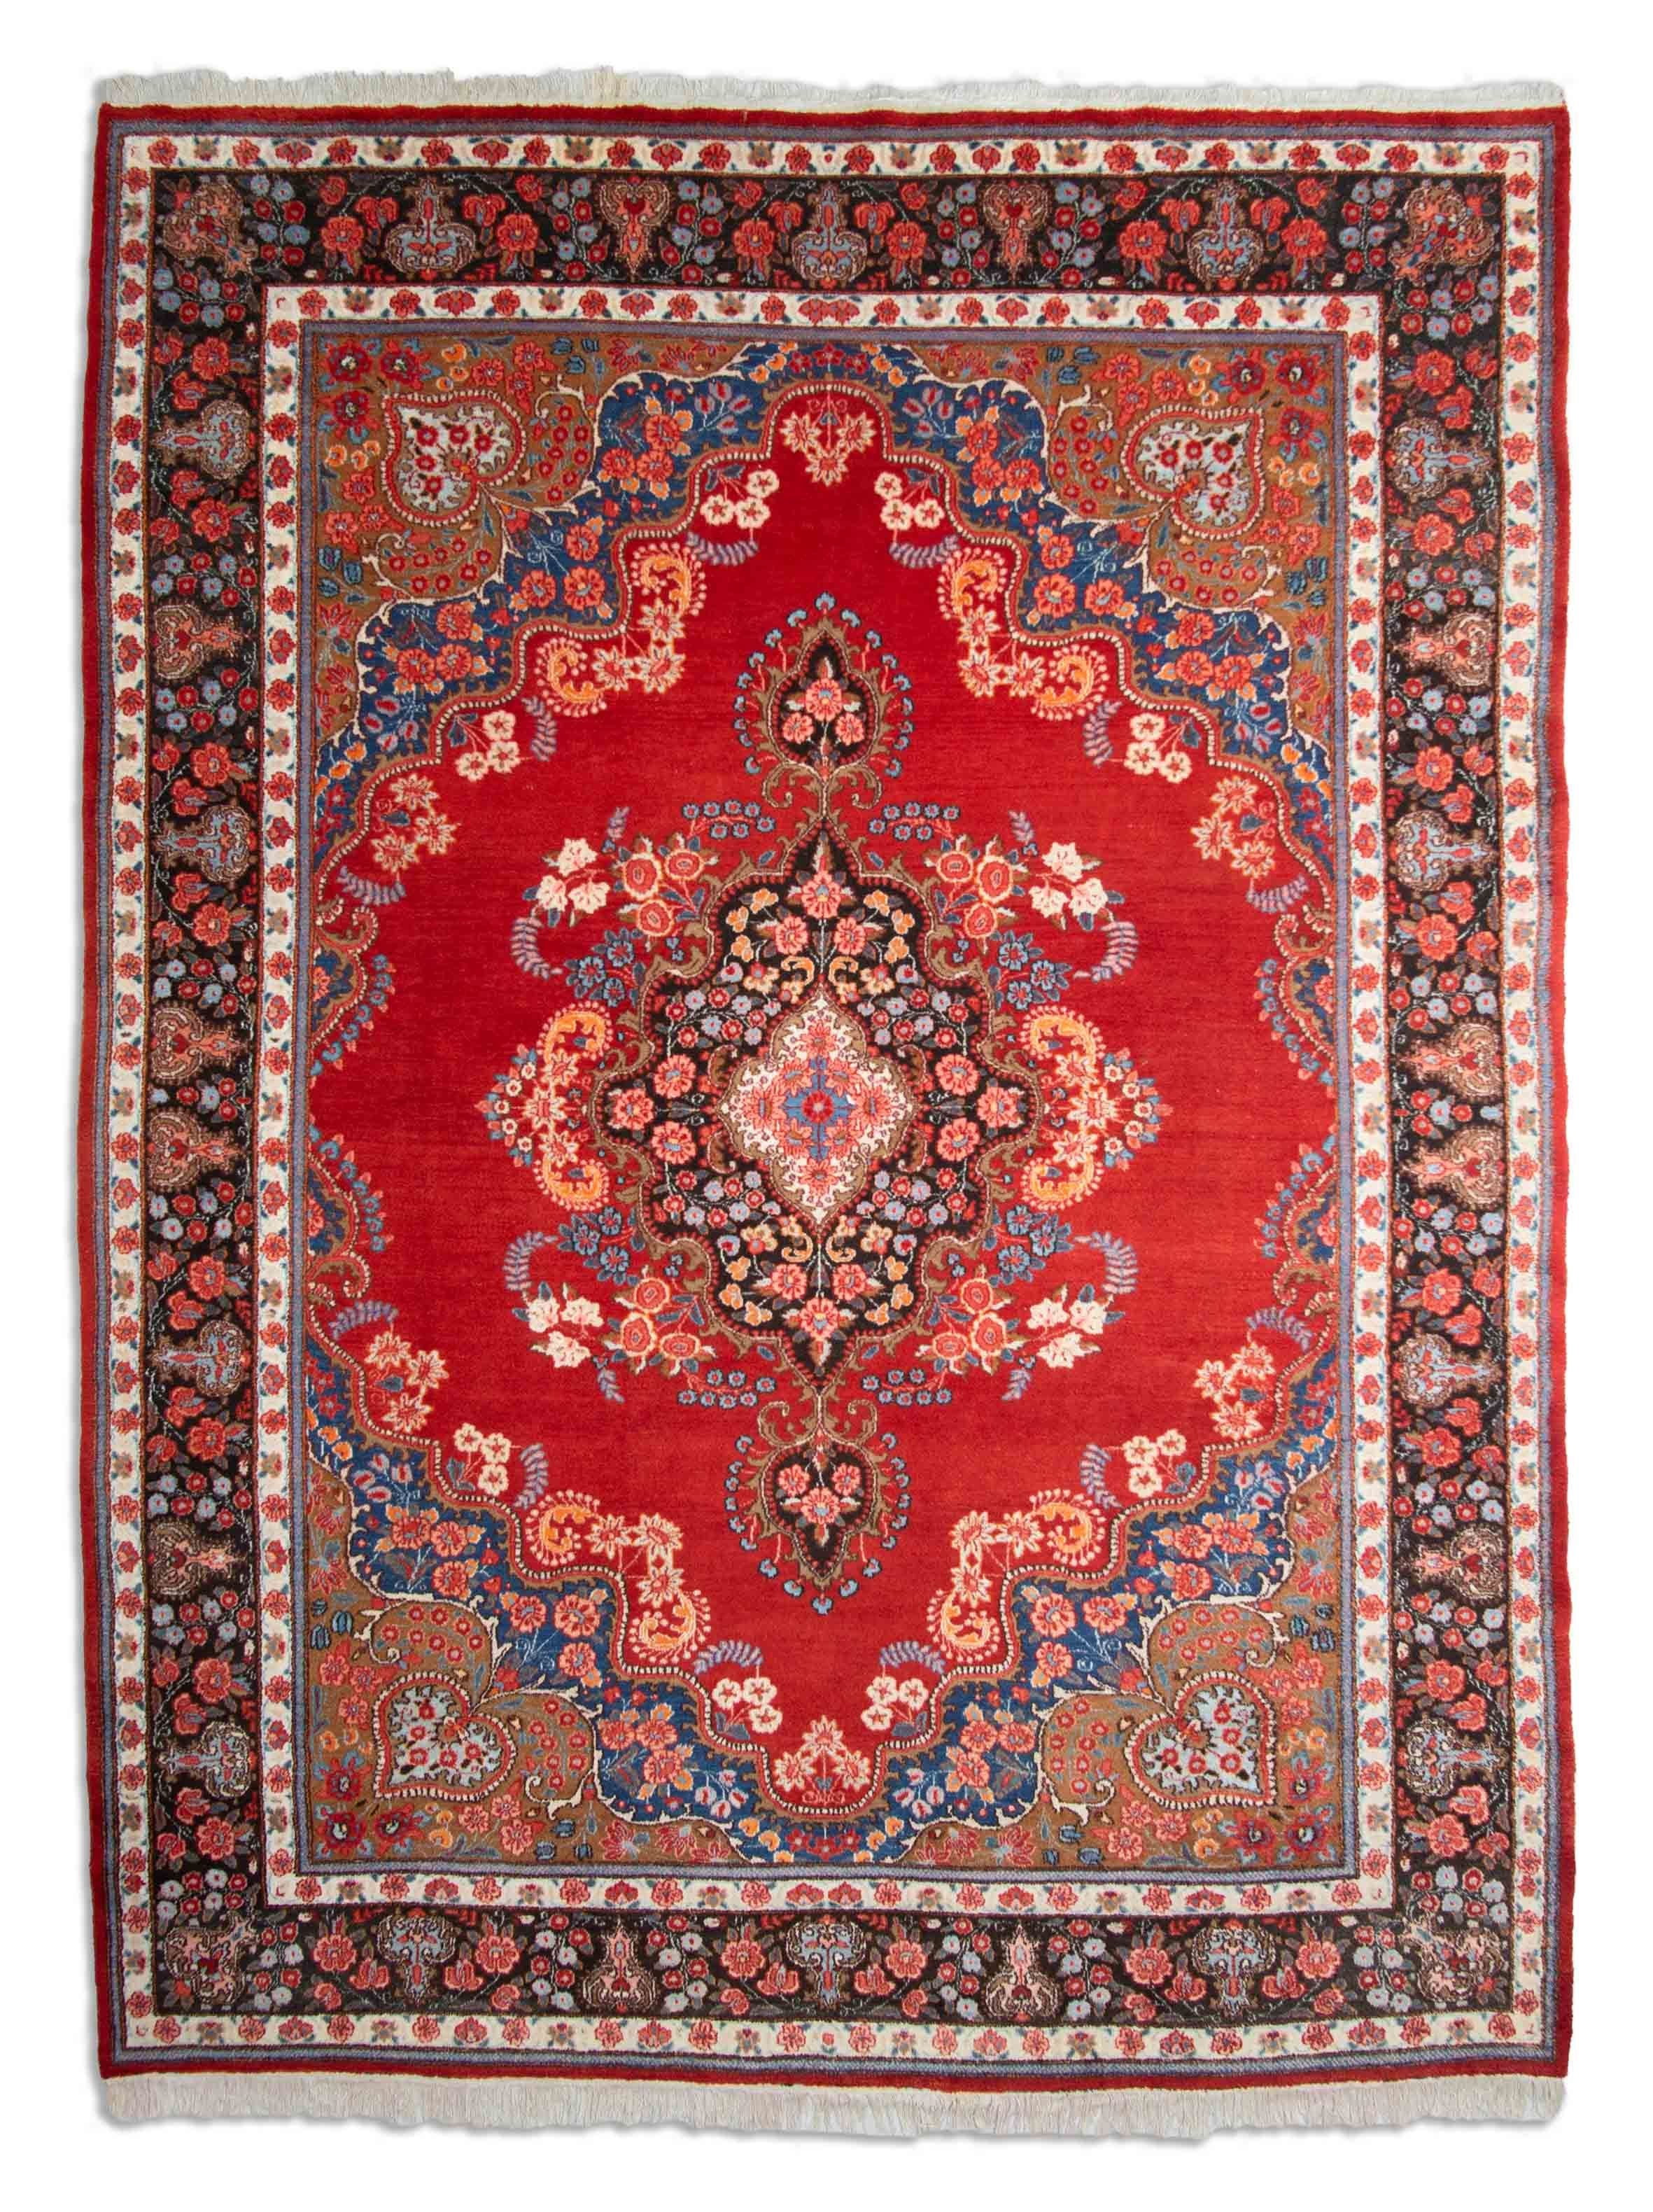 Eine Fotoaufnahme eines Meschad Teppichs.